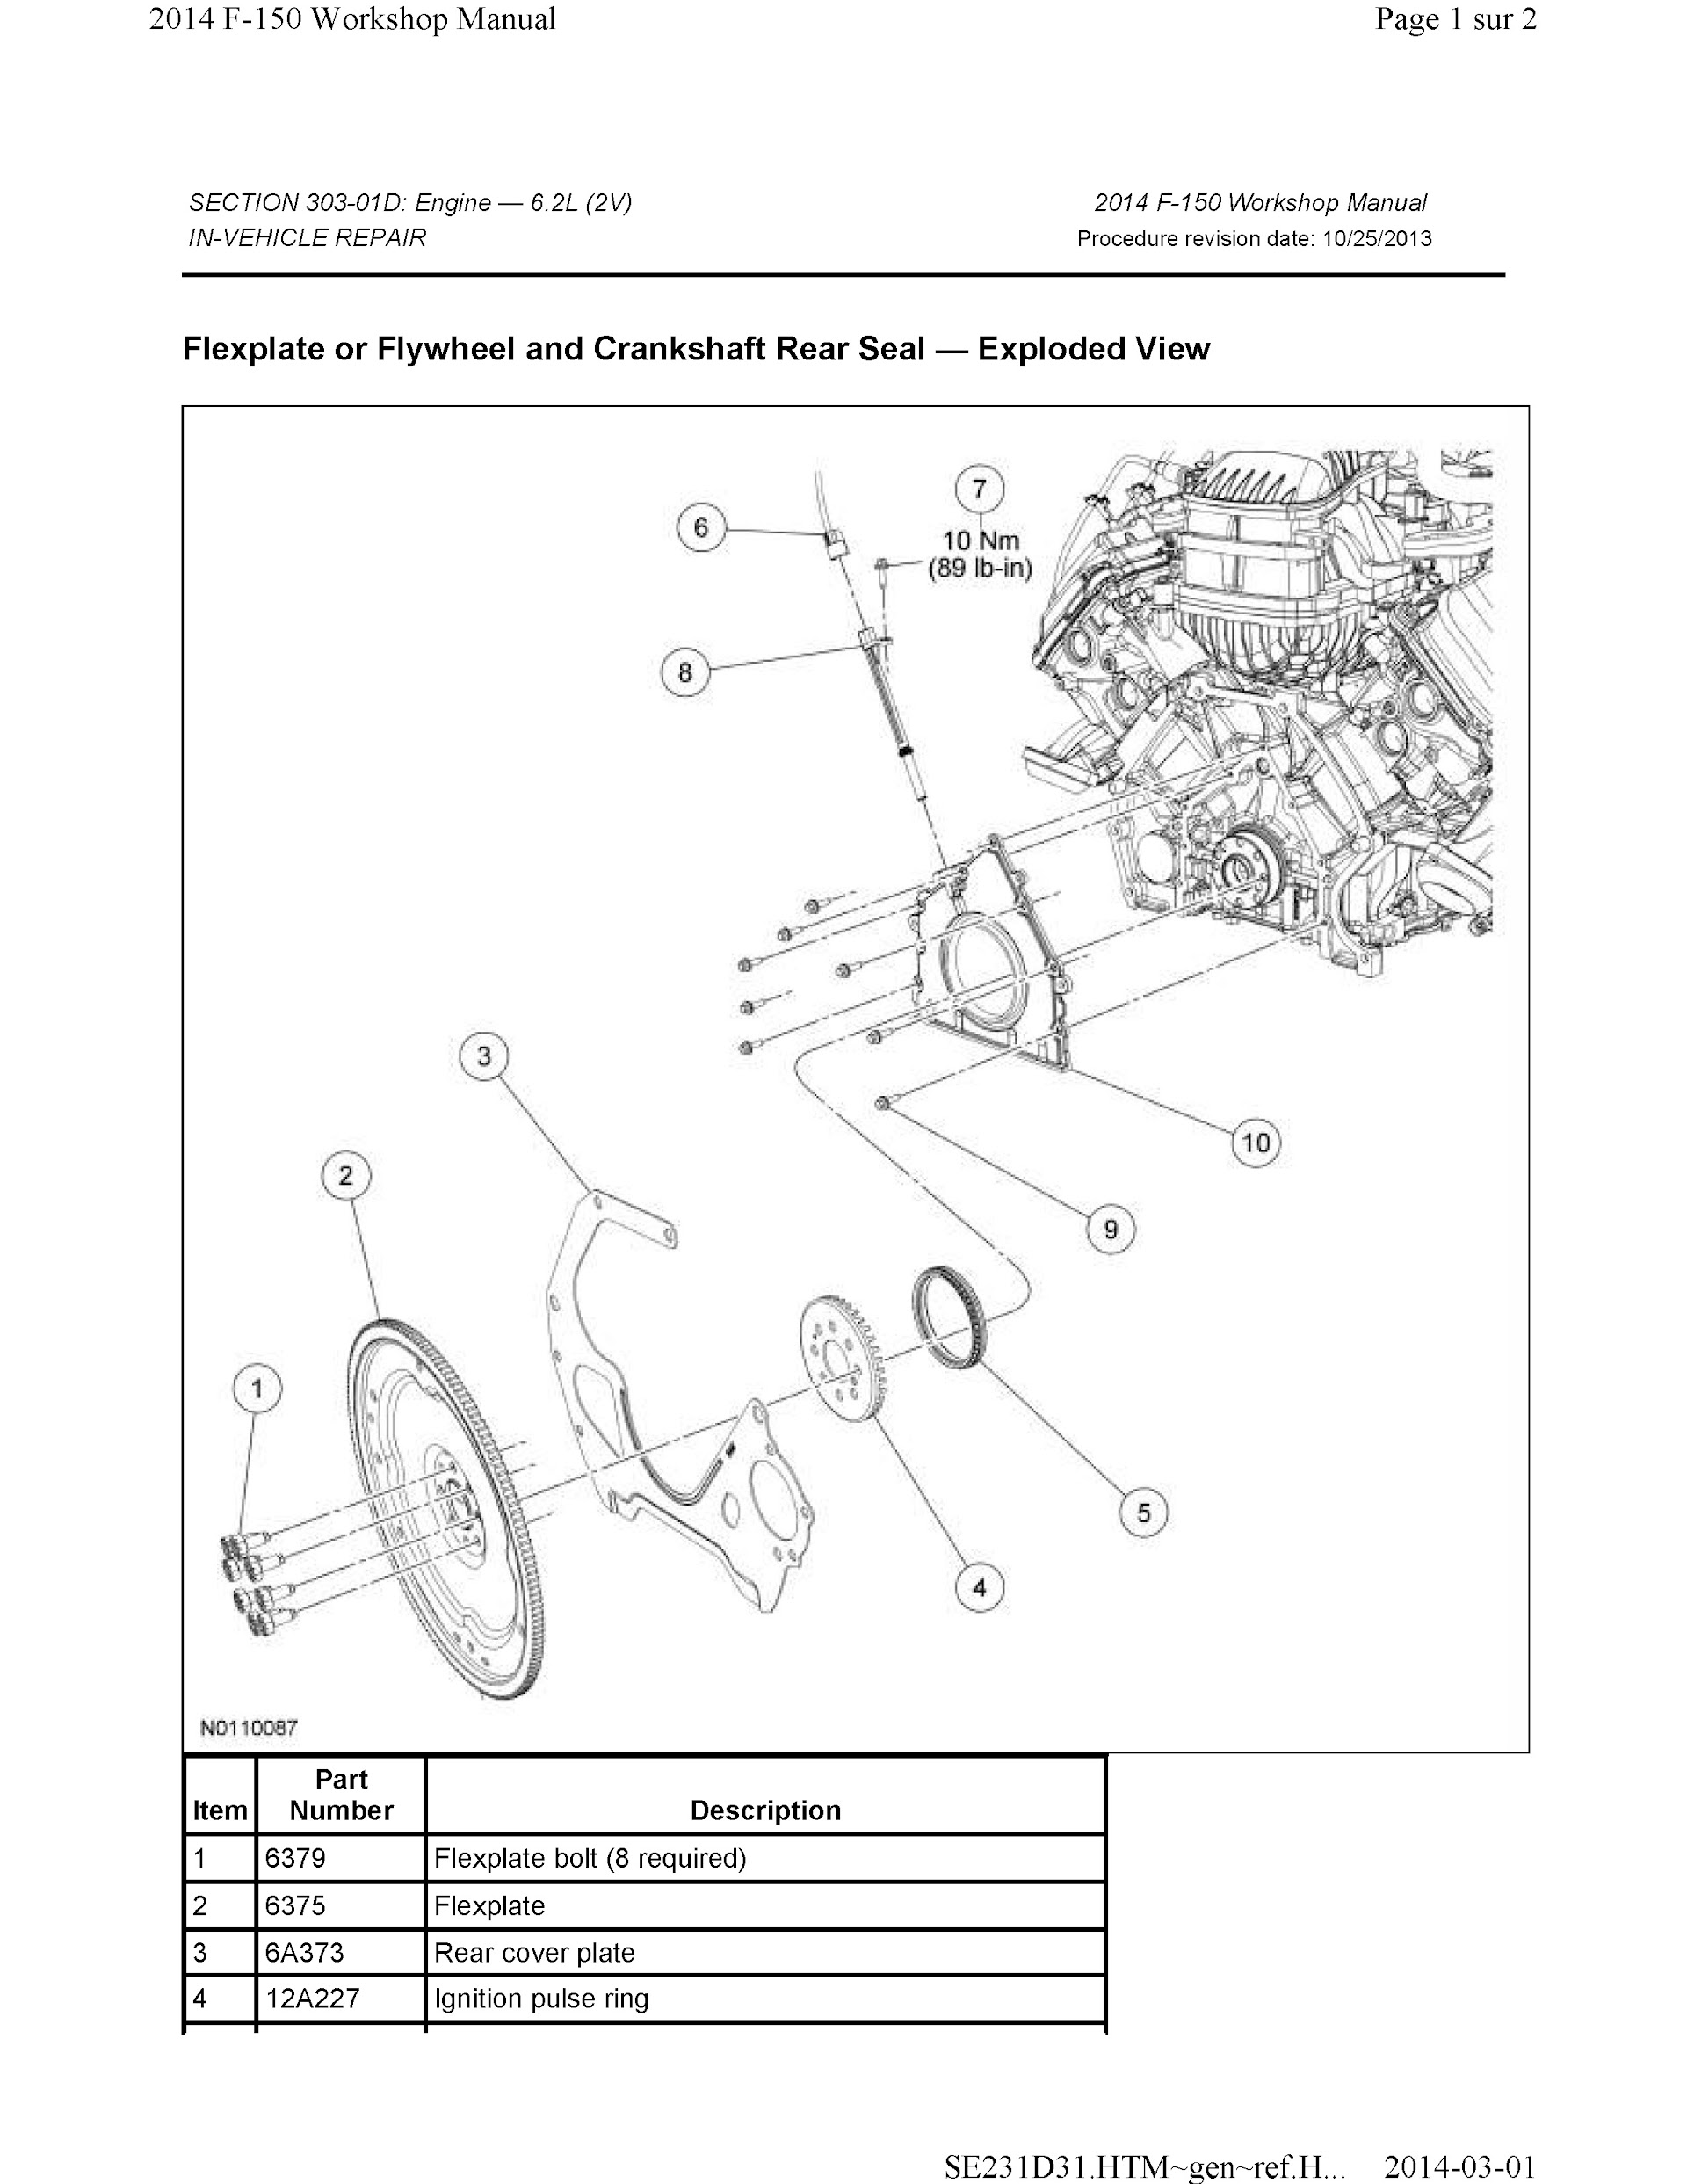 2011-2014 Ford F-150 Repair Manual, Engine 6.2L